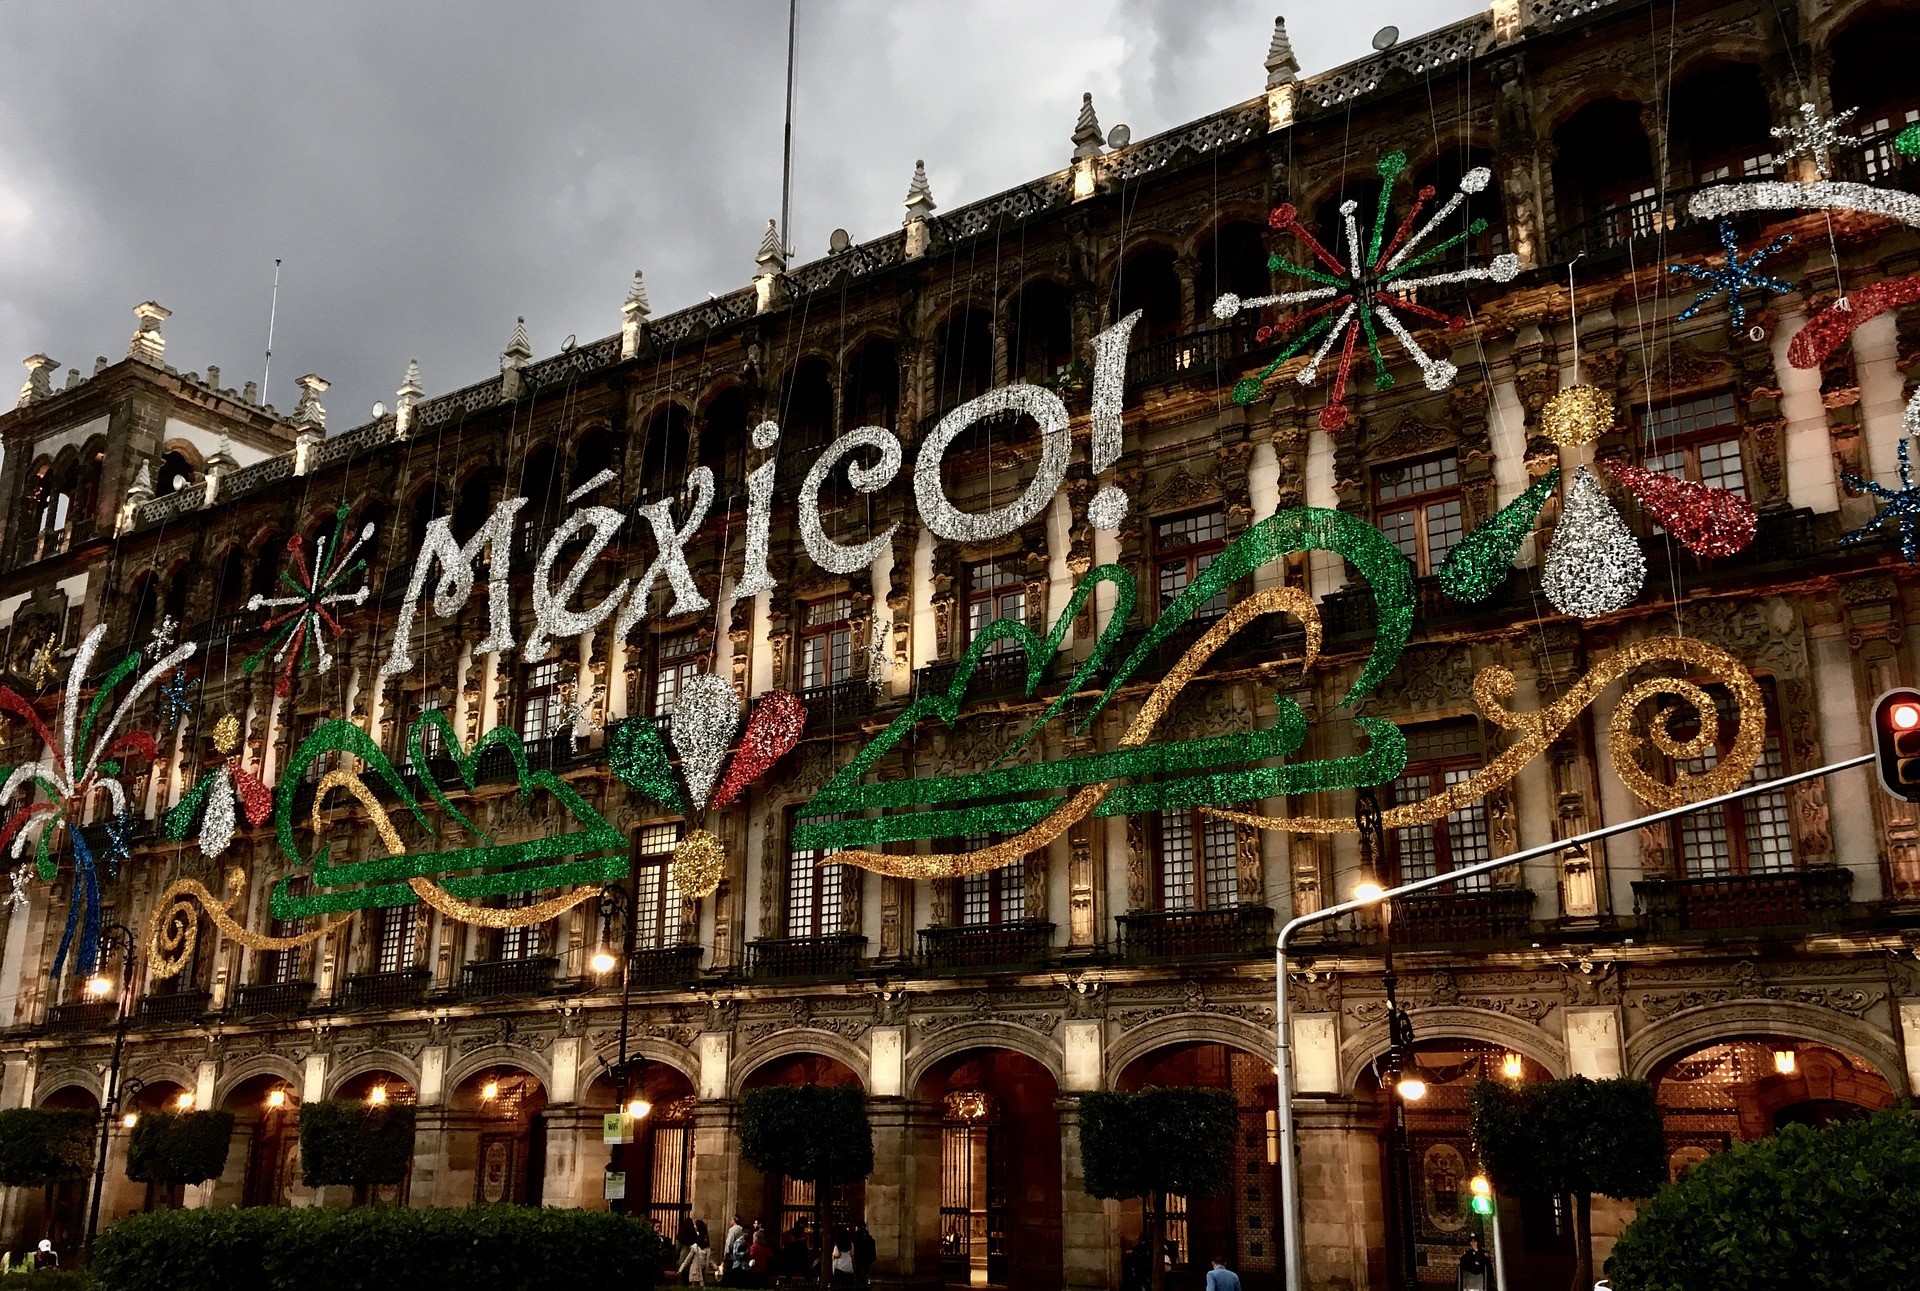 Den mexikanska mäklaren Casa de Bolsa Finamex har debuterat den första ETFen i Europa som riktar in sig på skulder i US-dollar utgivna av den mexikanska regeringen, det är således en första mexikansk statsobligations-ETF i Europa.